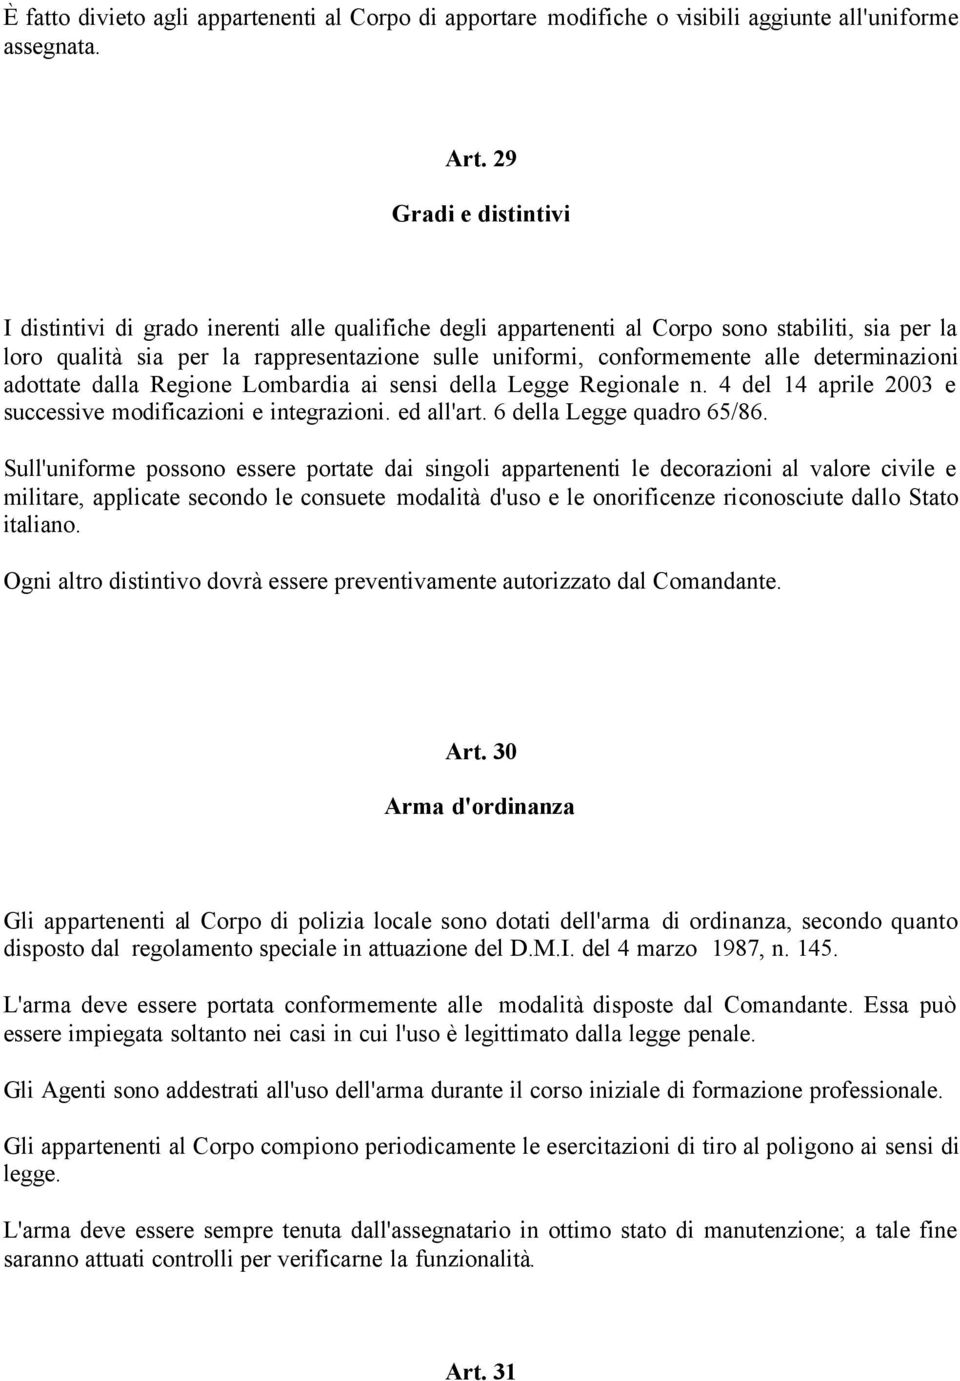 determinazioni adottate dalla Regione Lombardia ai sensi della Legge Regionale n. 4 del 14 aprile 2003 e successive modificazioni e integrazioni. ed all'art. 6 della Legge quadro 65/86.